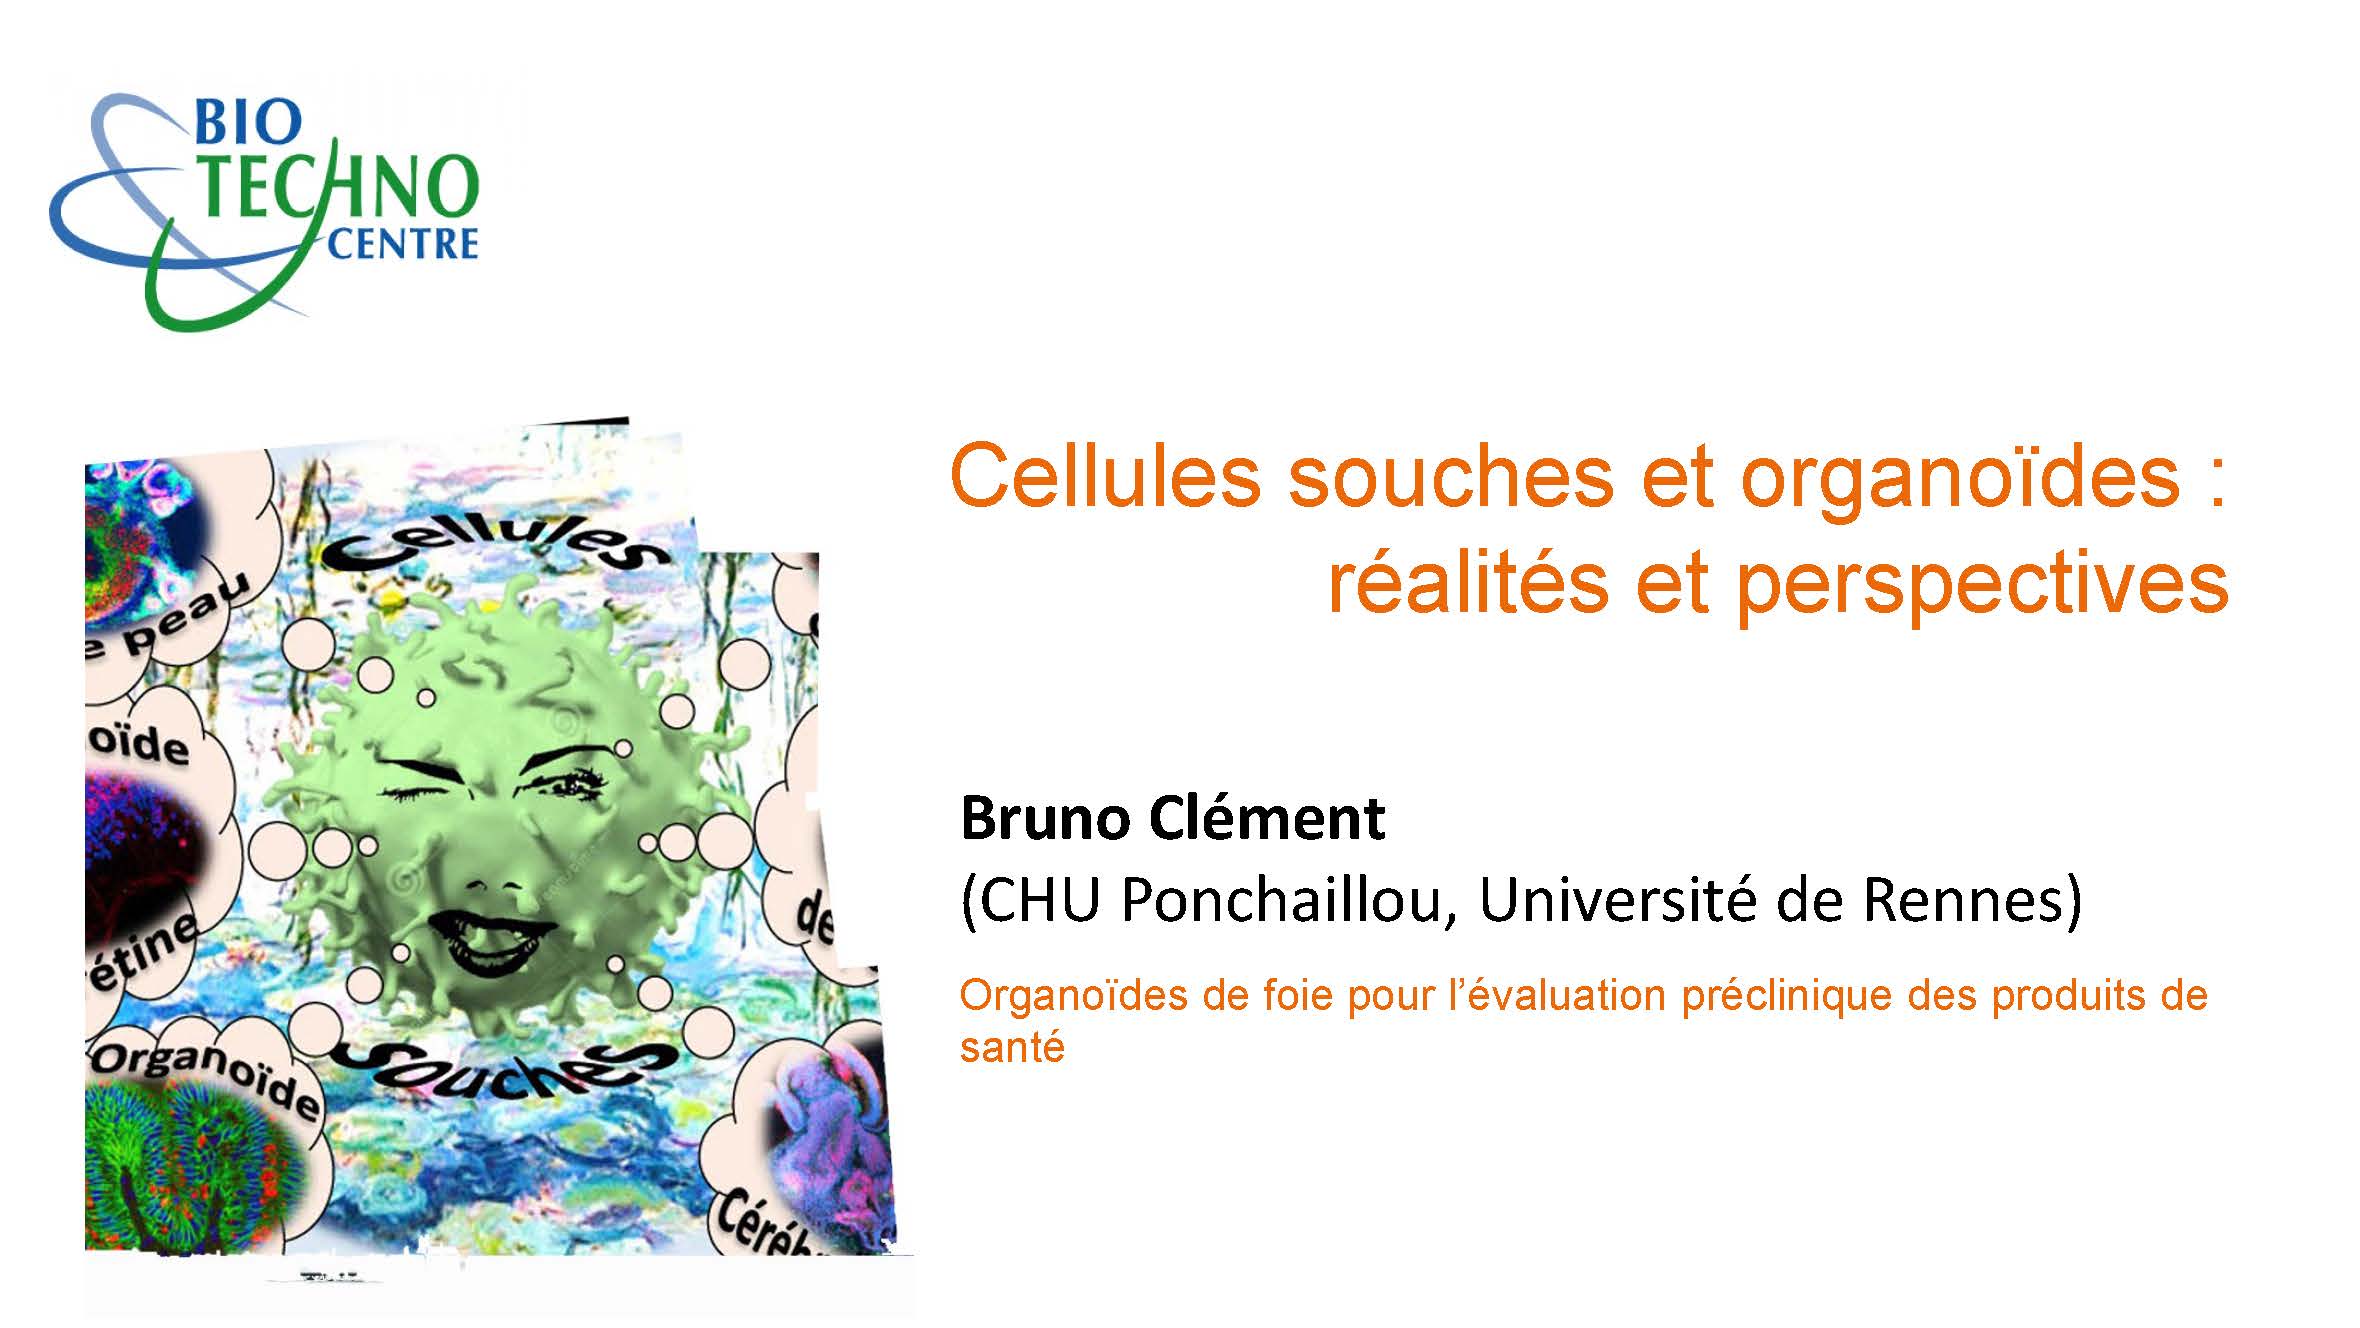 Bruno Clément - Organoïdes de foie pour l’évaluation préclinique des produits de santé